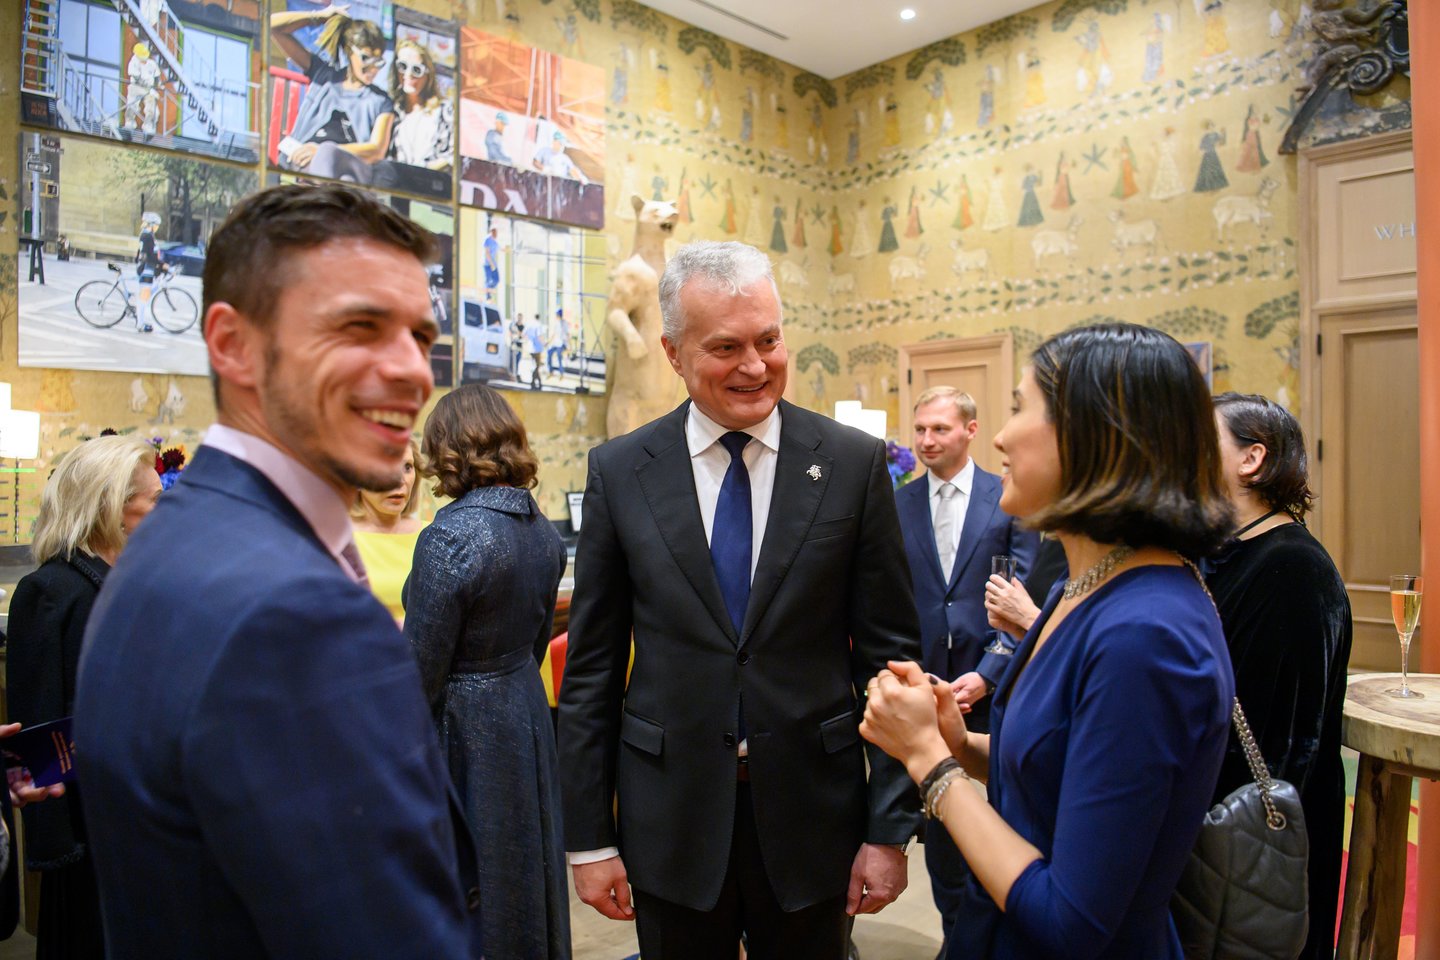  Lietuvos prezidentas Gitanas Nausėda ir pirmoji ponia Diana Nausėdienė dalyvavo Niujorke surengtoje paramos Ukrainai vakarienėje.  <br>Prezidento kanceliarijos nuotr.